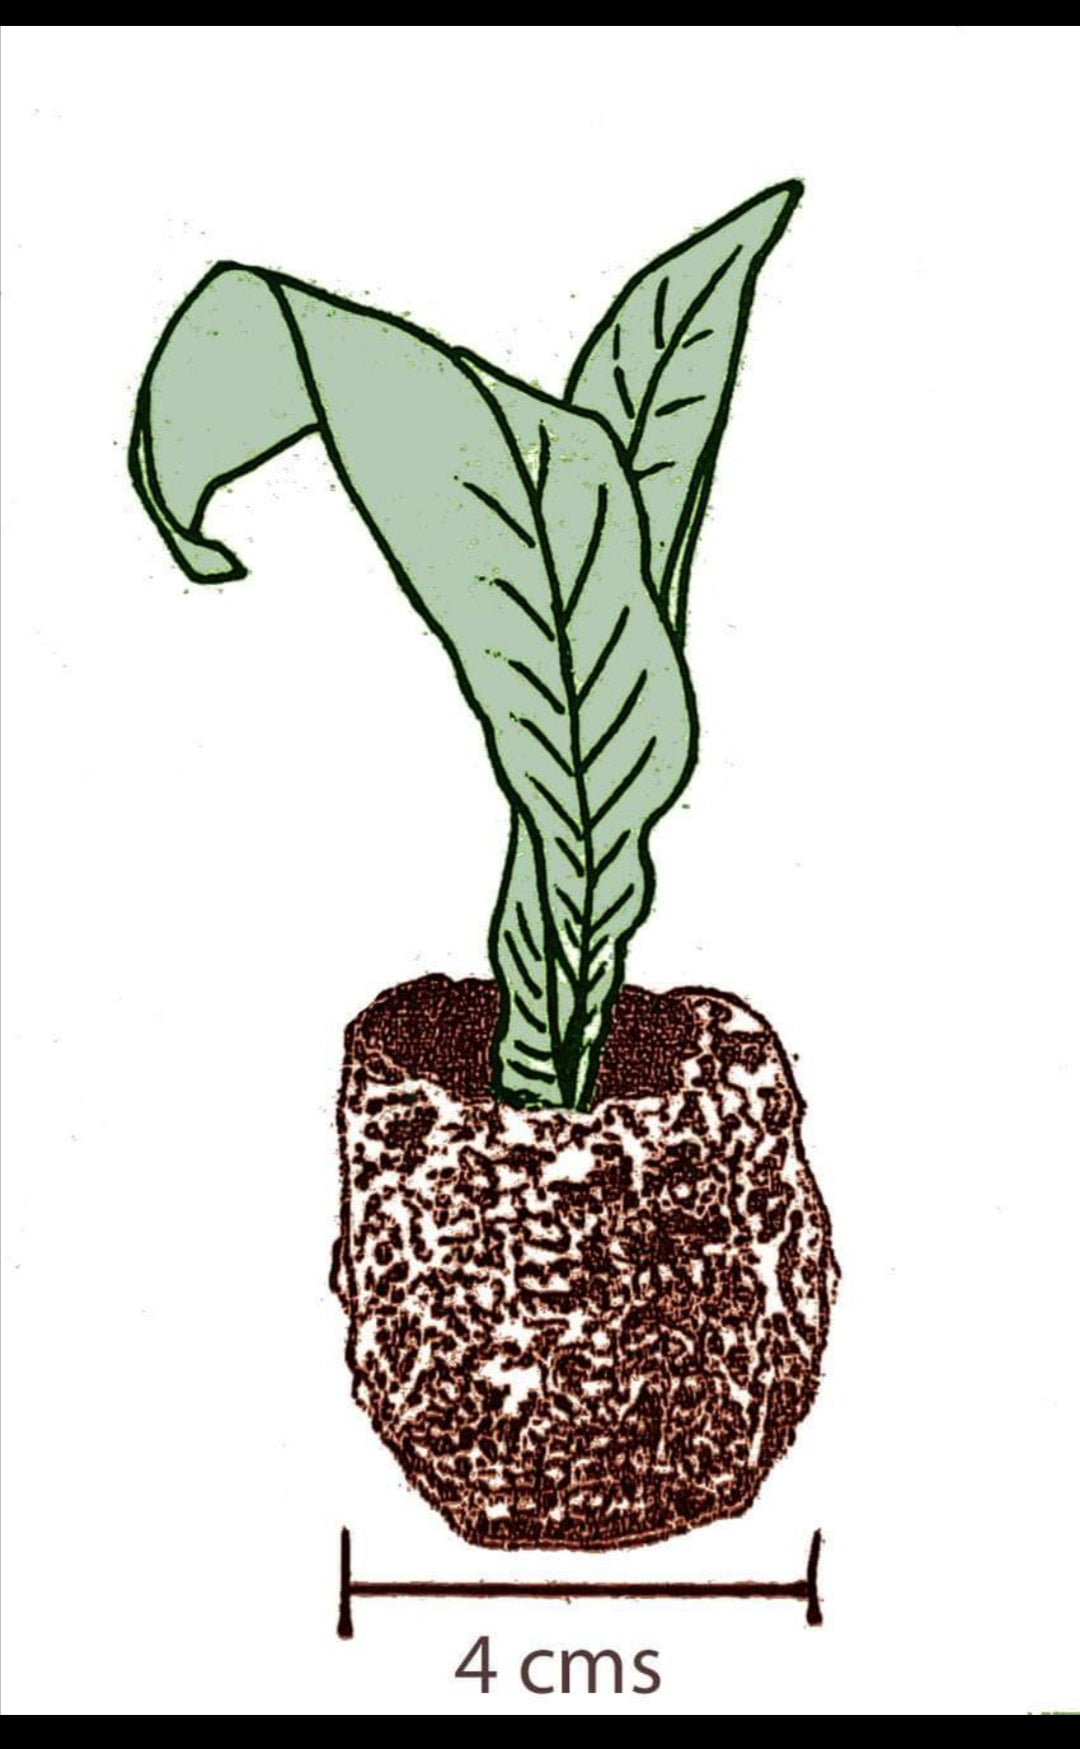 Streptocarpus thompsonii